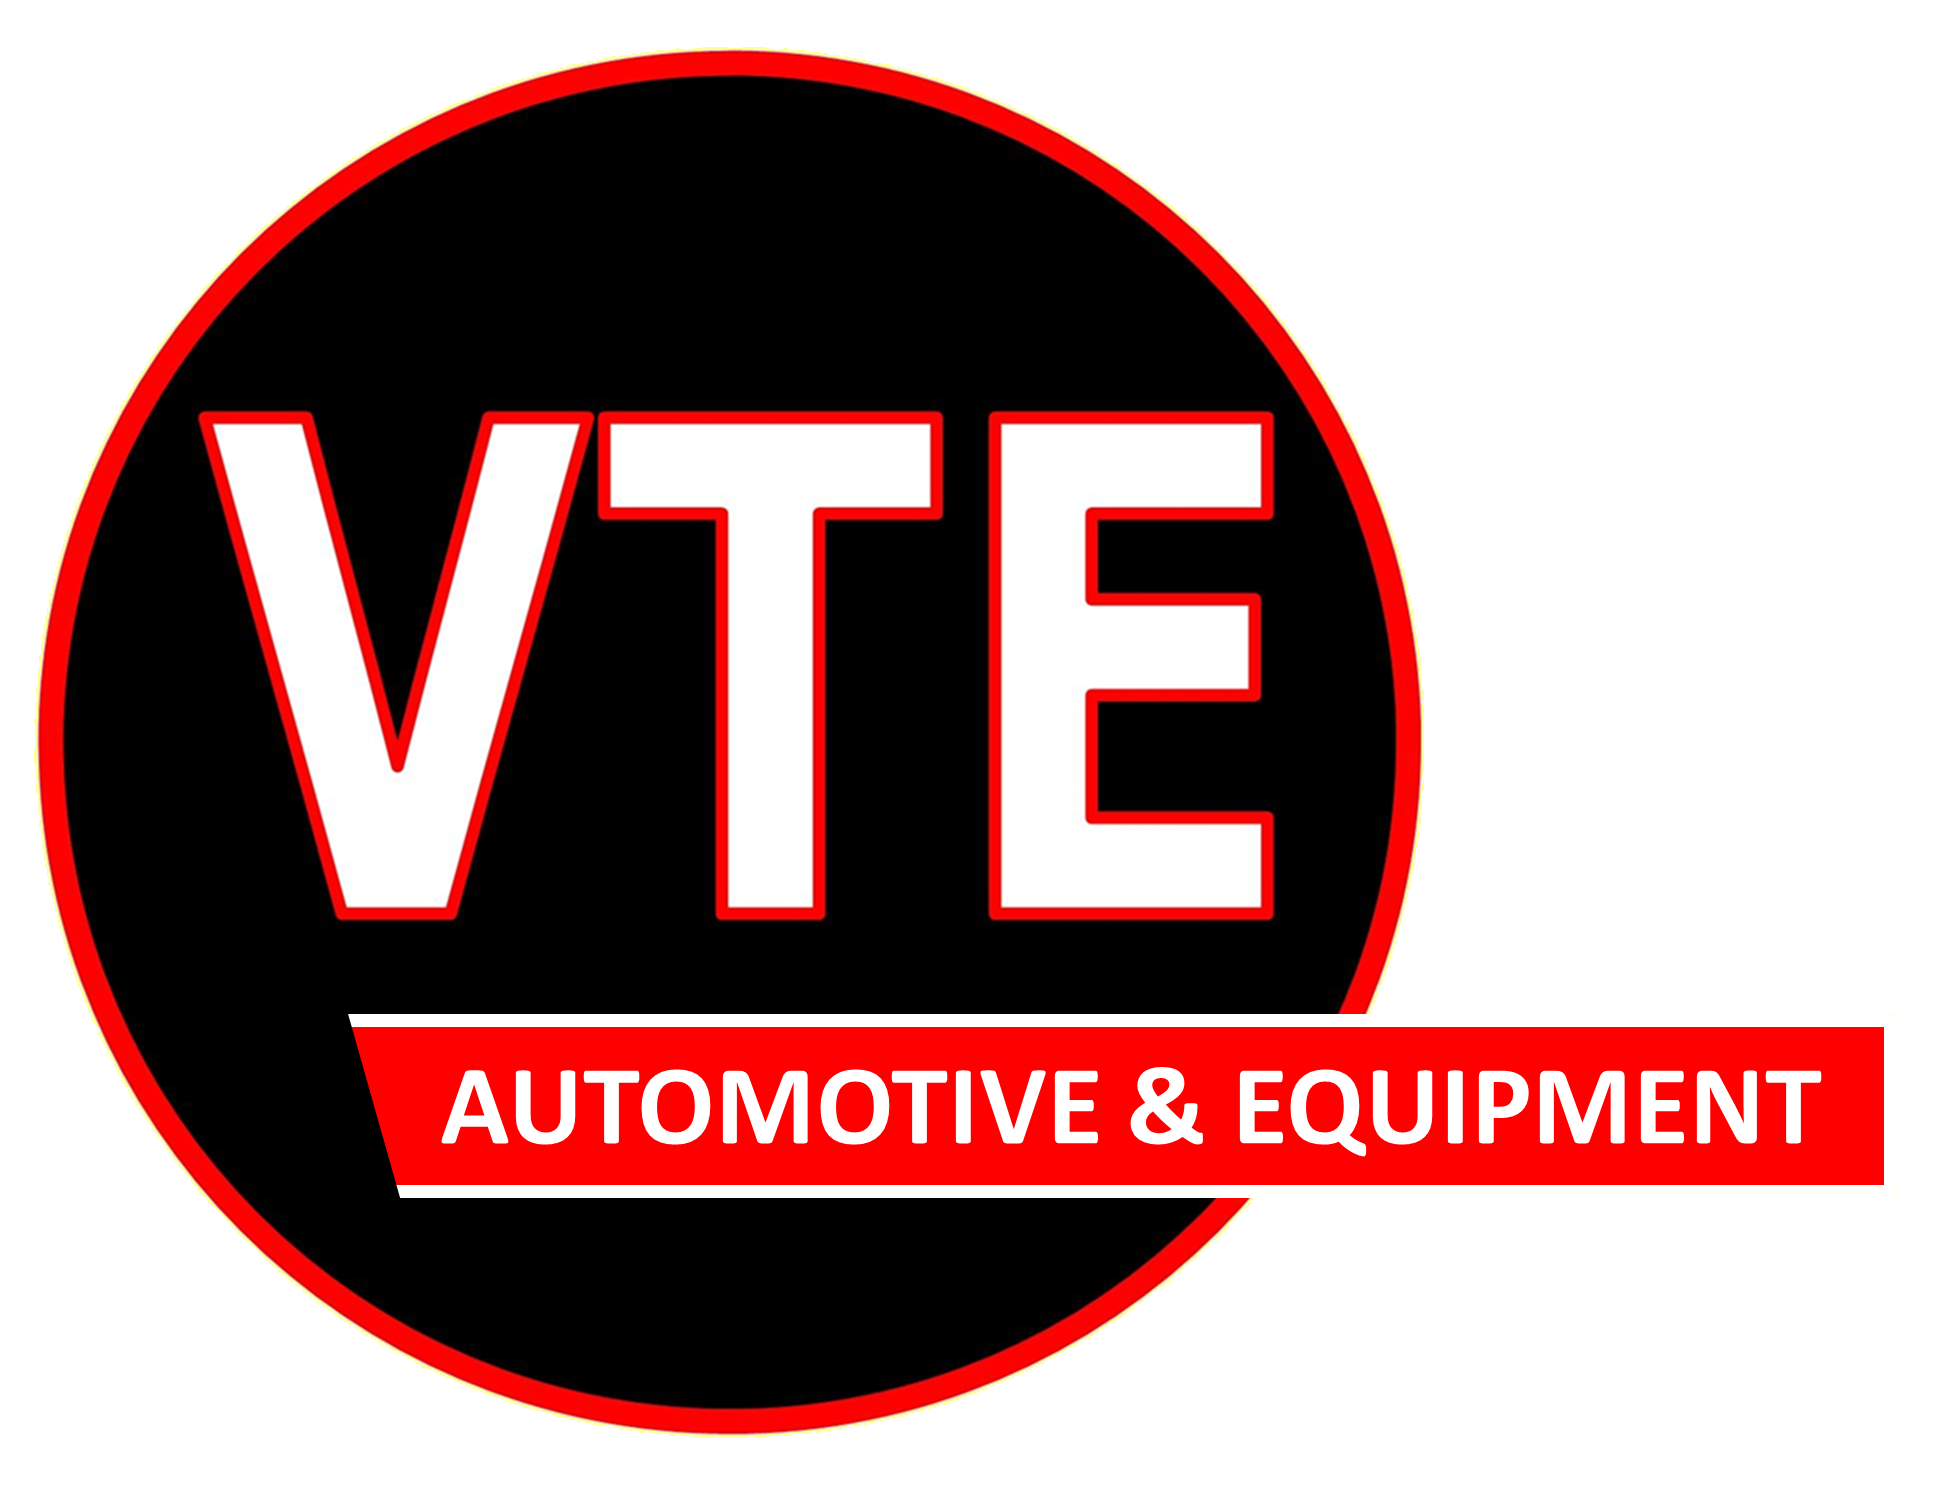 VTE logo